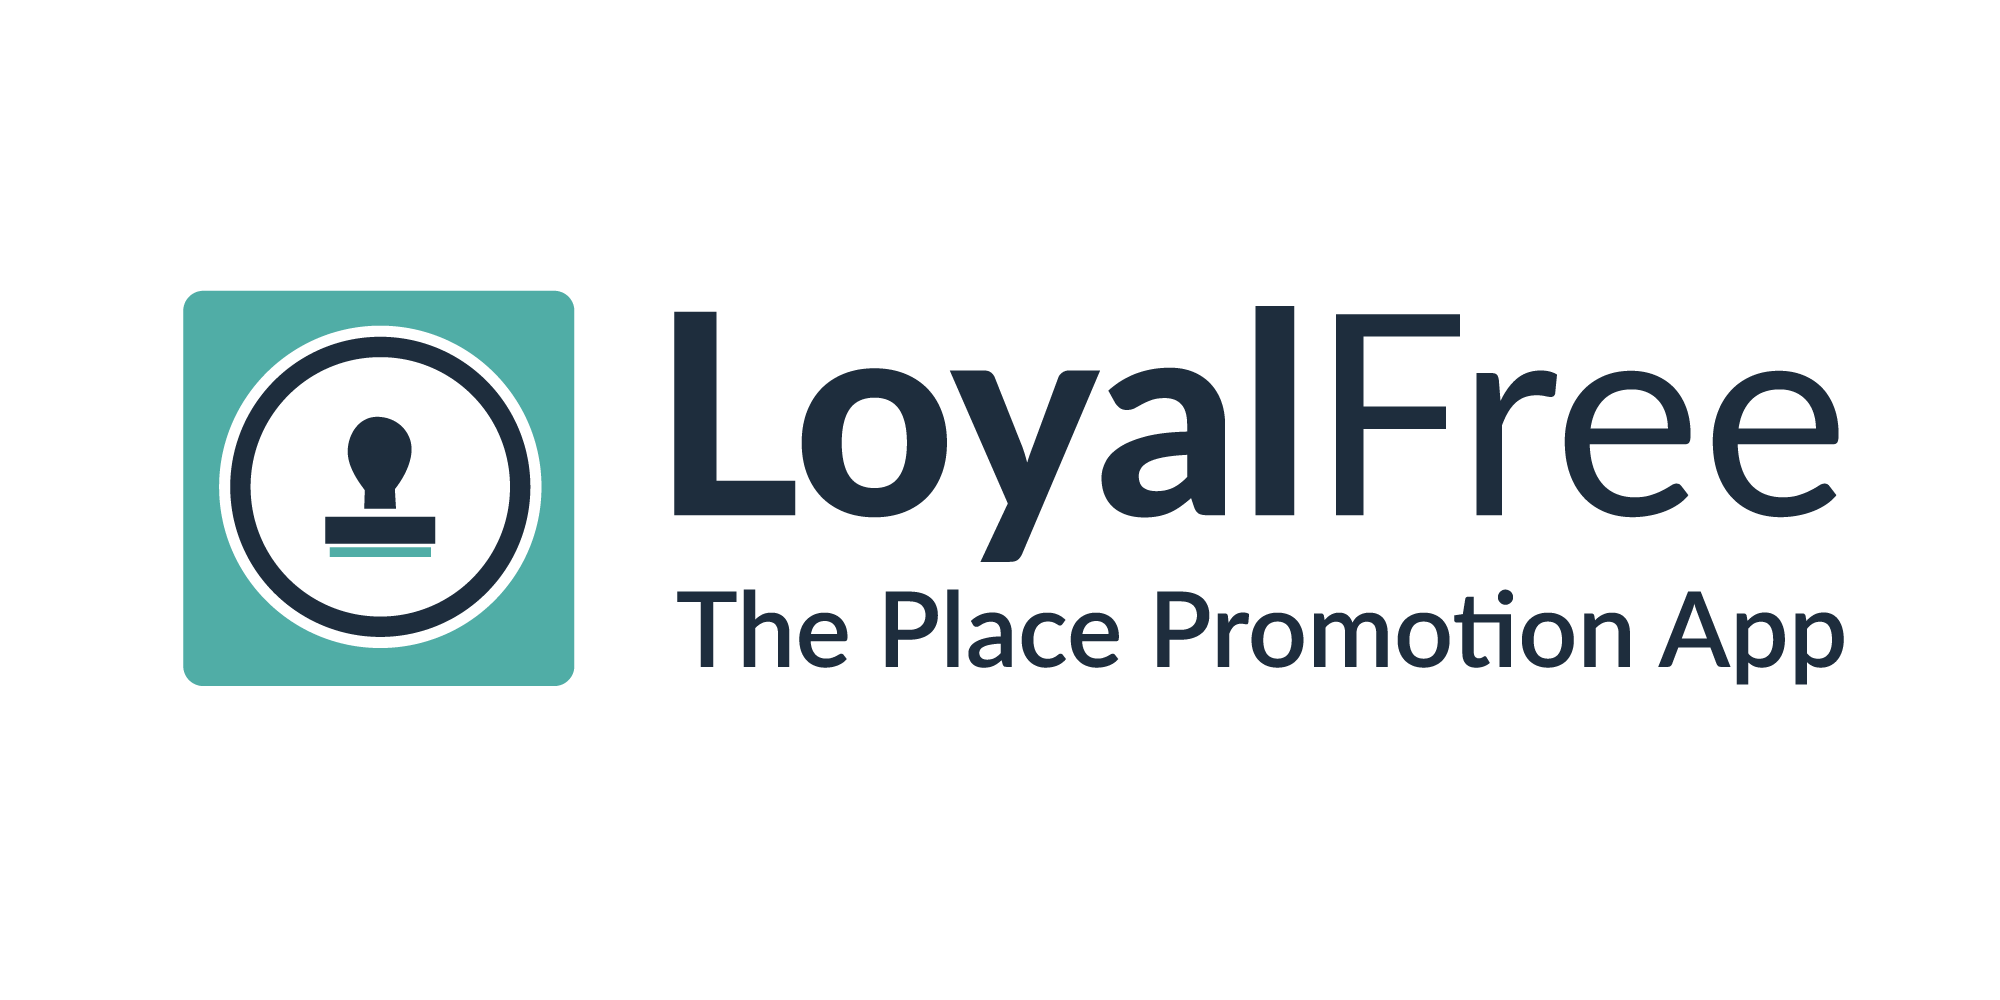 bid-loyalfree-logo (1).png